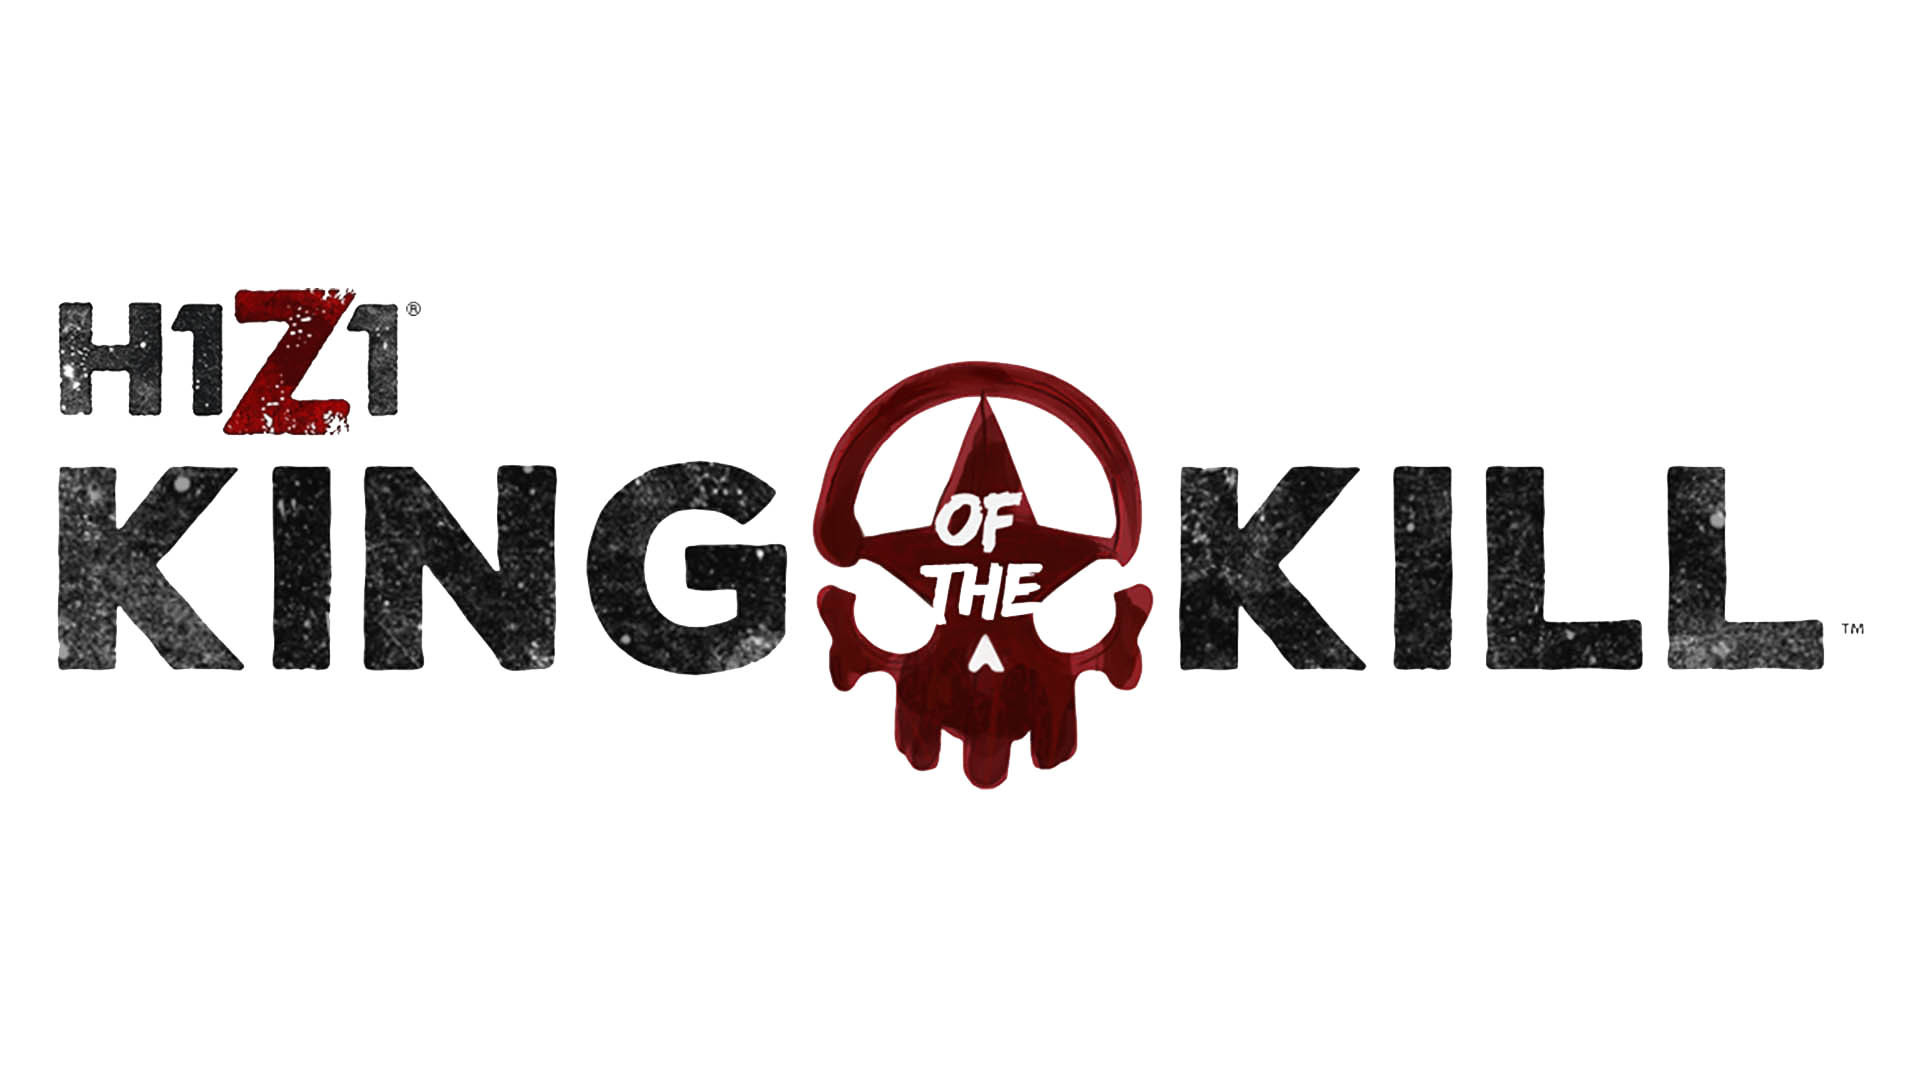 1920x1080 Daybreak hat H1Z1: King of the Kill heute ein groÃes Update mit vielen  Ãnderungen und neuem Content spendiert und ein Video dazu verÃ¶ffentlicht: